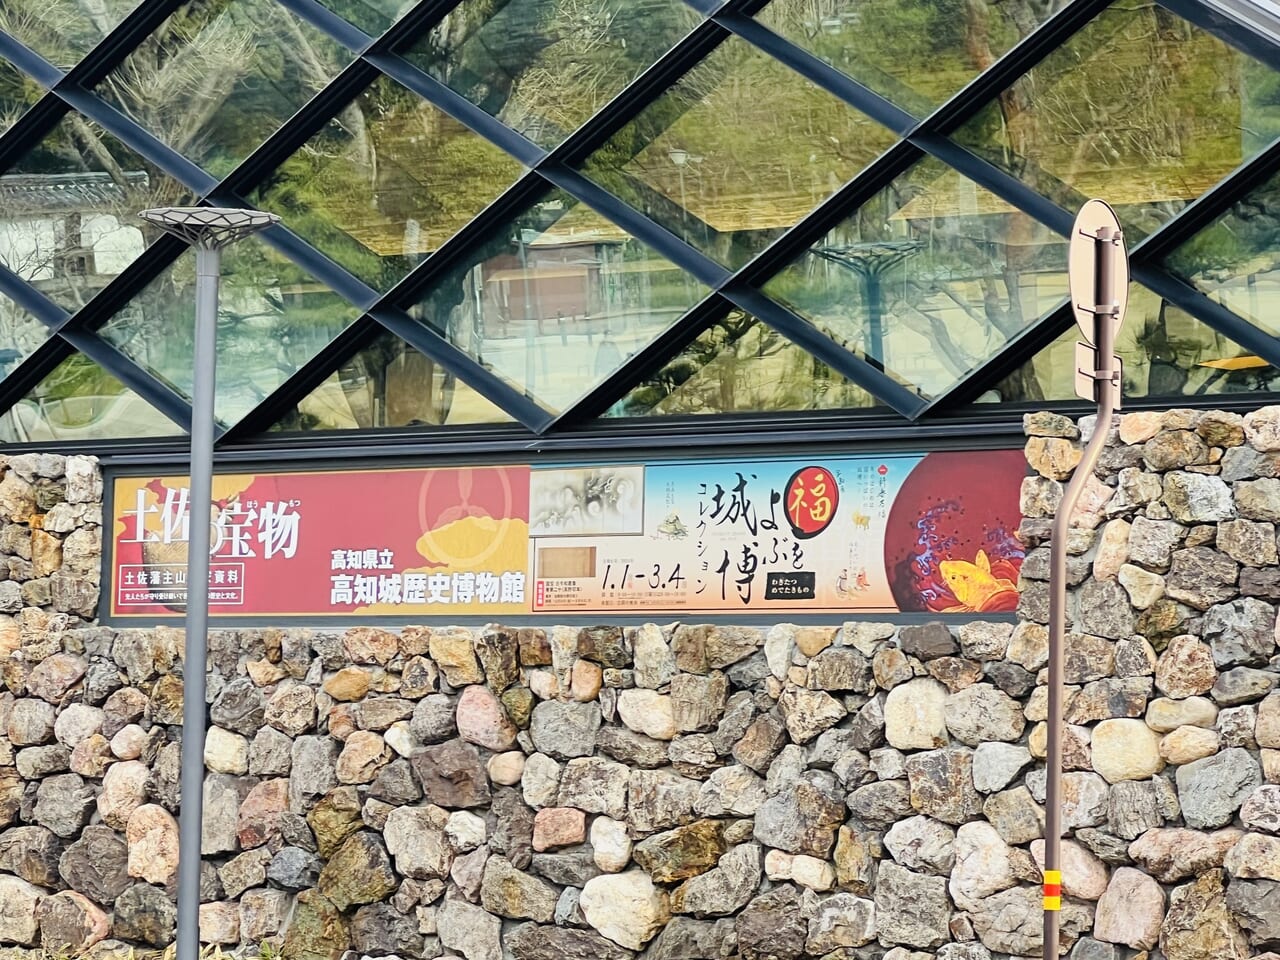 2024年3月15日から「高知城歴史博物館で」始まる企画展「政社の時代 民権と反民権」のポスター